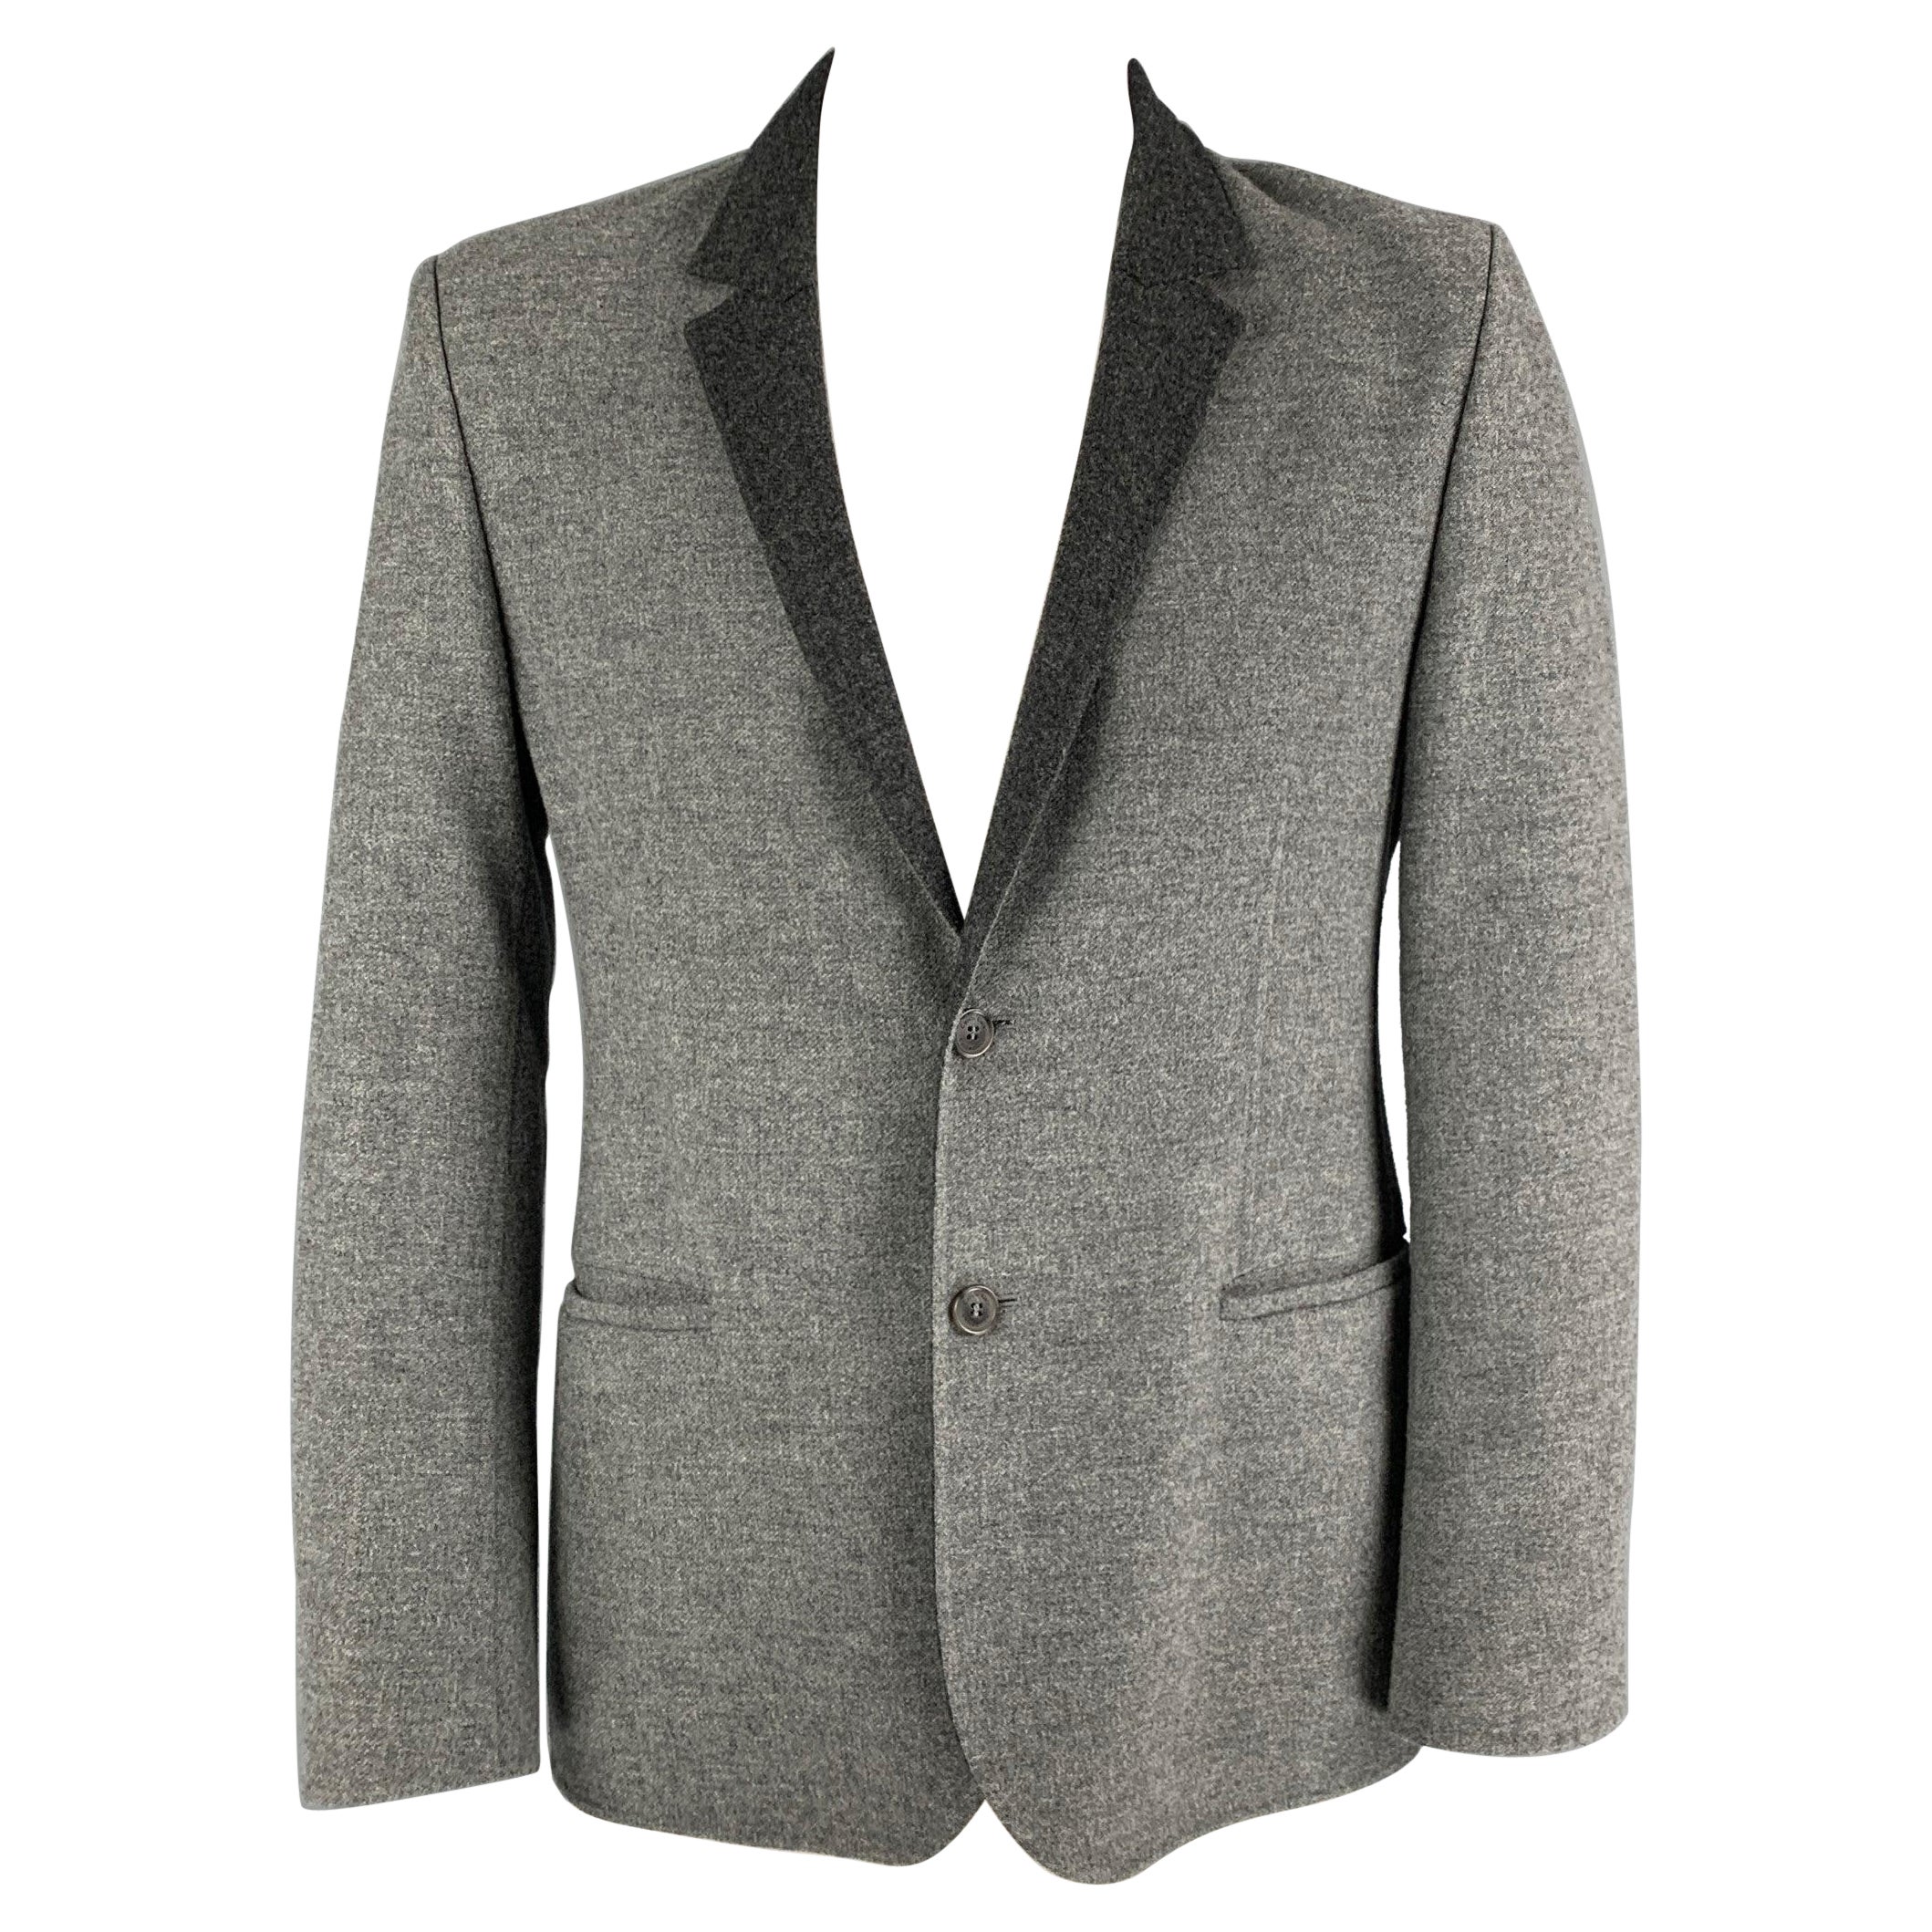 CALVIN KLEIN COLLECTION - Manteau de sport en laine gris anthracite, taille 42 en vente